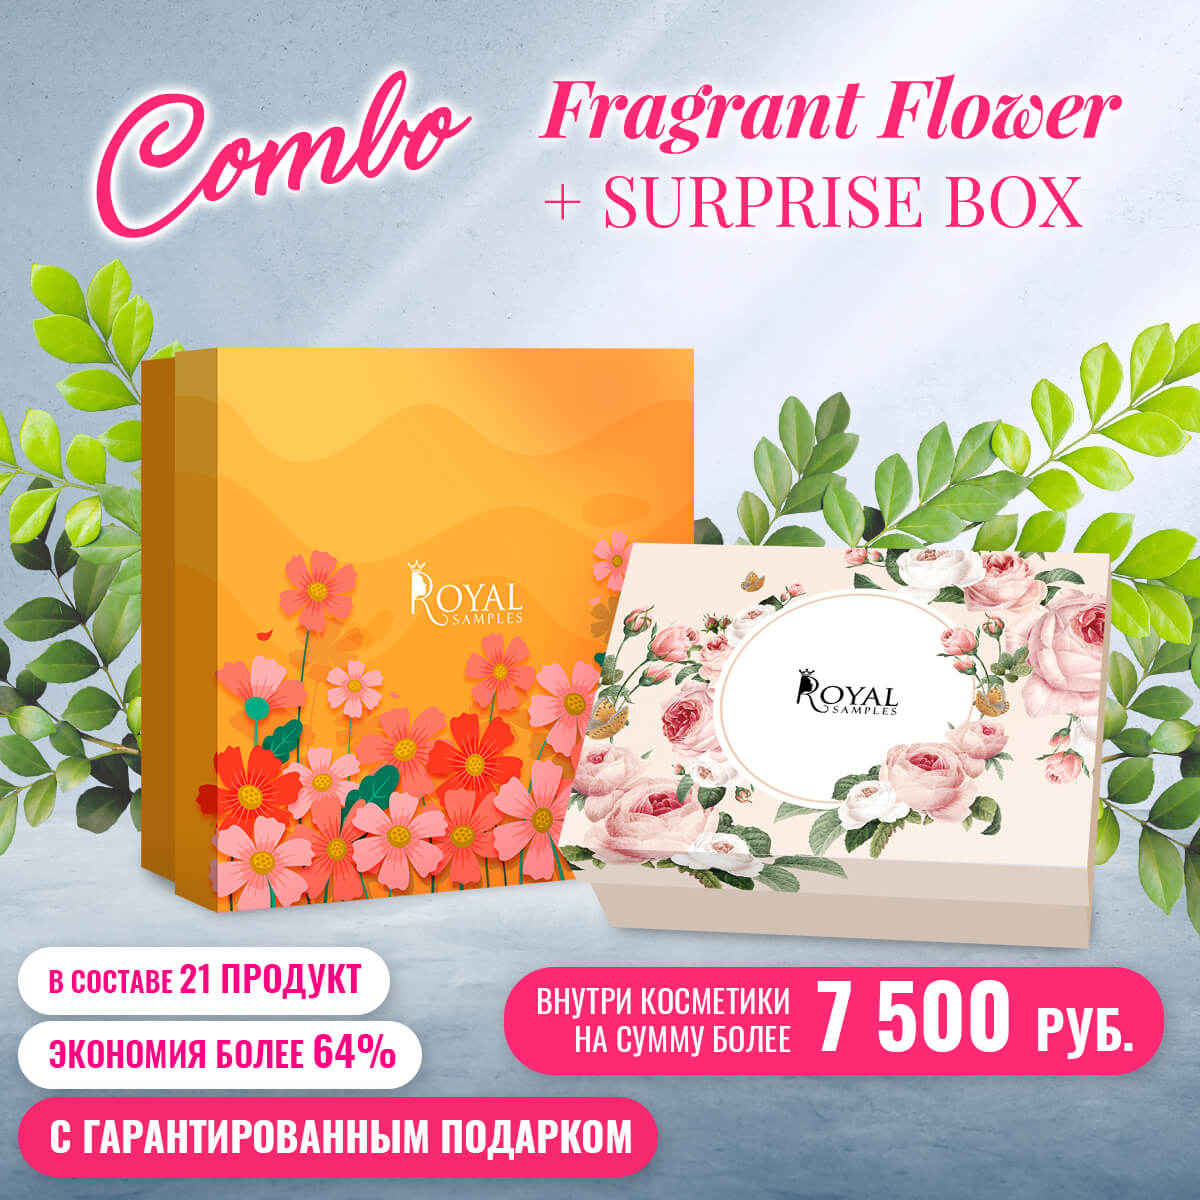 Combo Fragrant flower + Surprise Box